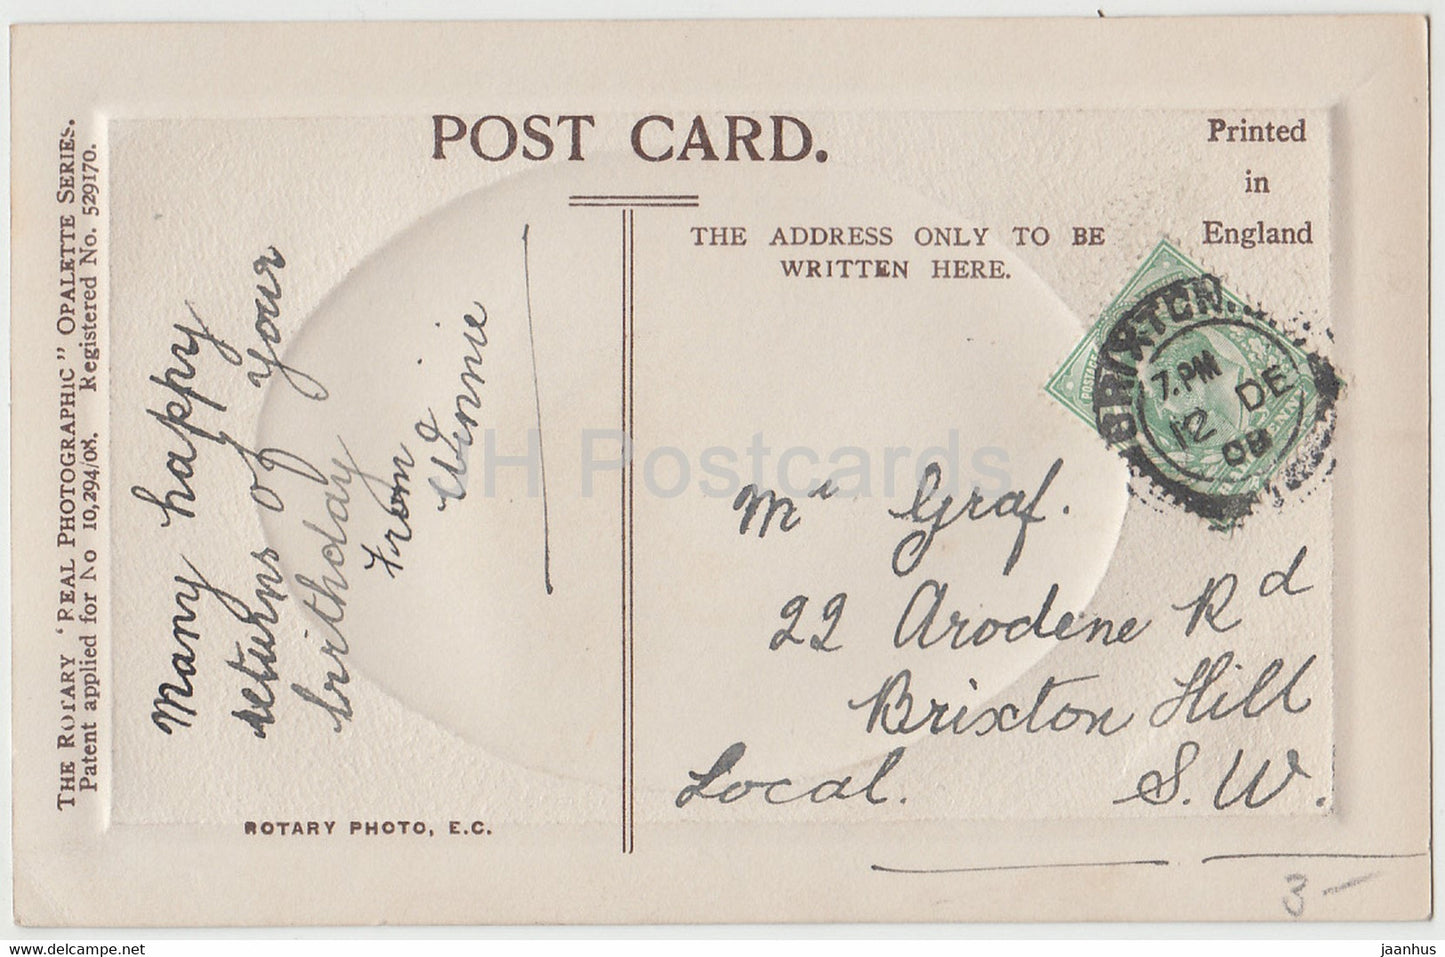 Salutations d'anniversaire - La Grâce du Ciel soit comblée - fille - Carte postale ancienne Opalette - 1908 - Royaume-Uni - utilisé